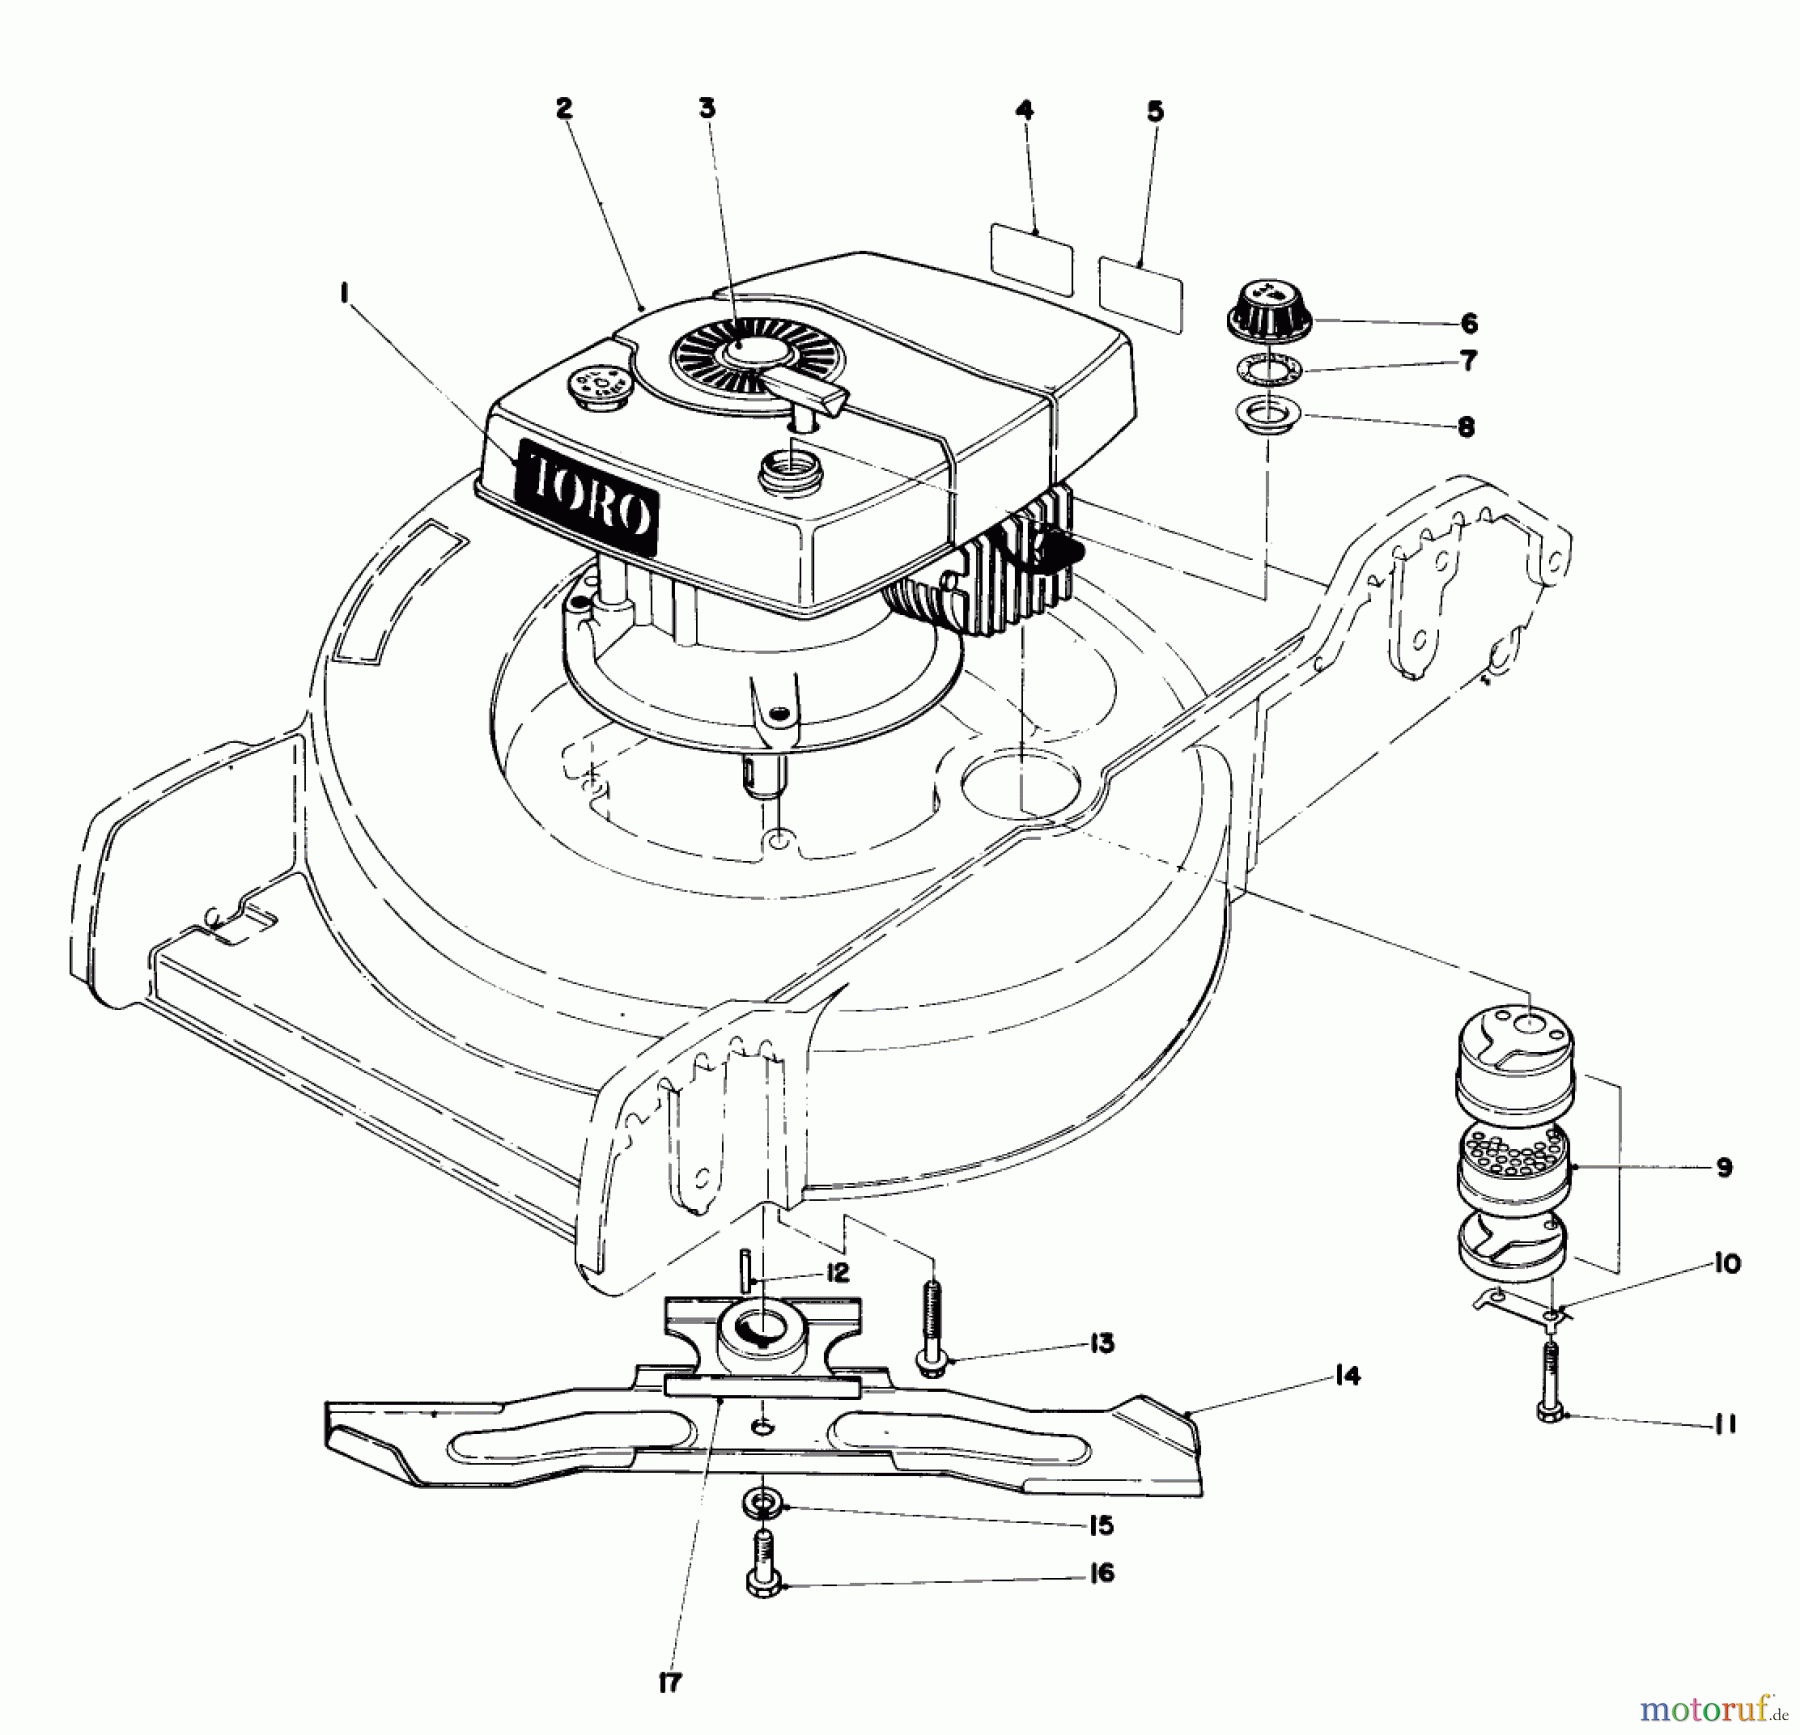  Toro Neu Mowers, Walk-Behind Seite 1 20758 - Toro Lawnmower, 1981 (1000001-1999999) ENGINE ASSEMBLY